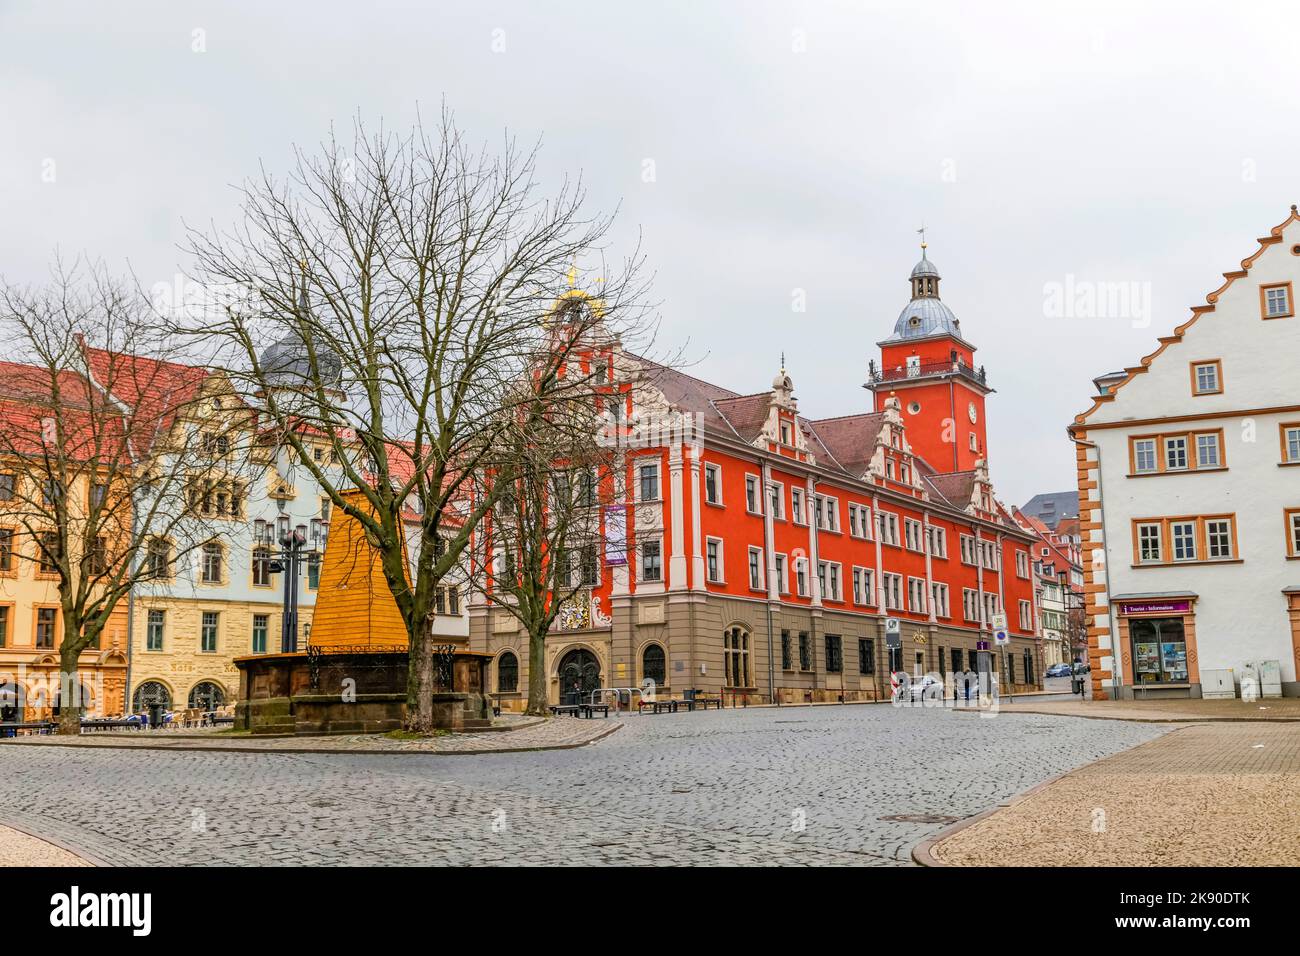 GOTHA, GERMANIA - MAR 25, 2016: Vista panoramica sul municipio storico di Gotha. Il grande edificio rinascimentale fu eretto tra il 1567 e il 1574. Foto Stock